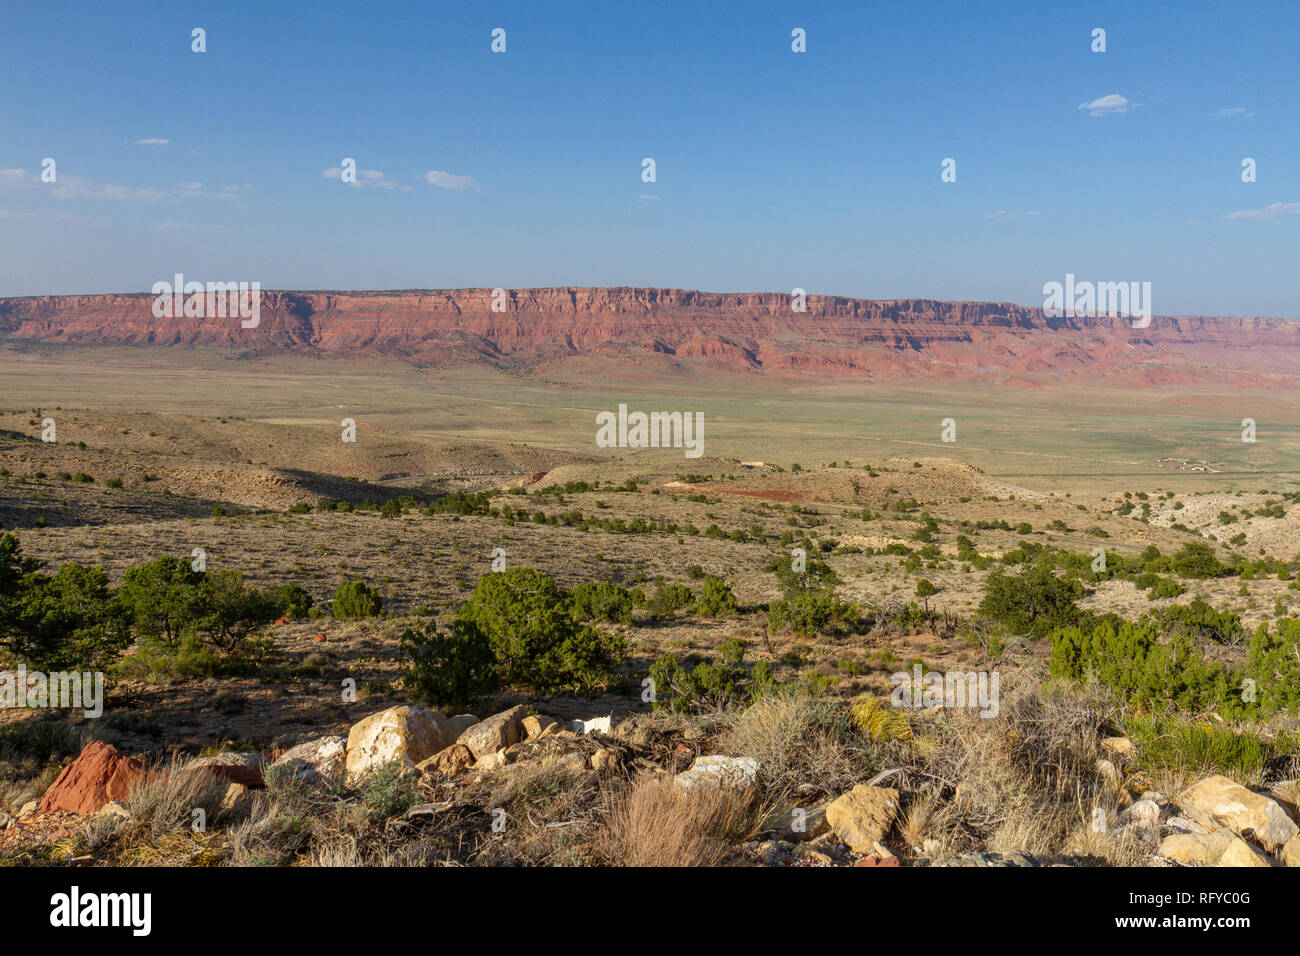 Le Monument National de Vermilion Cliffs vu de près de Horse Rock Canyon, Arizona, United States. Banque D'Images